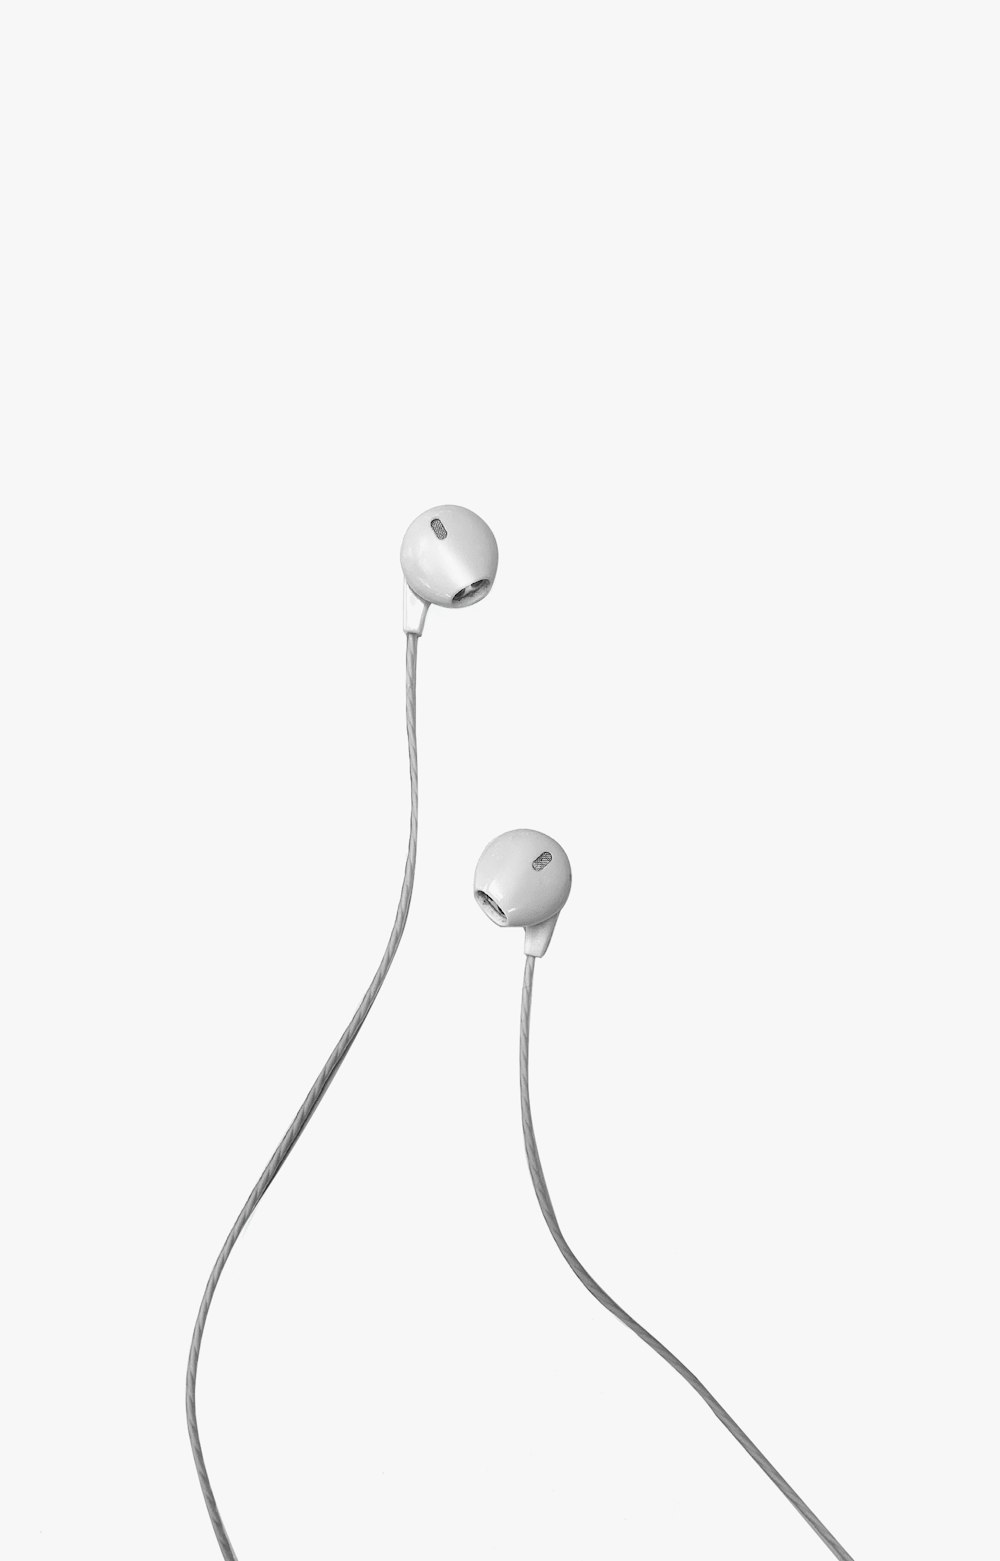 white apple earpods on white background